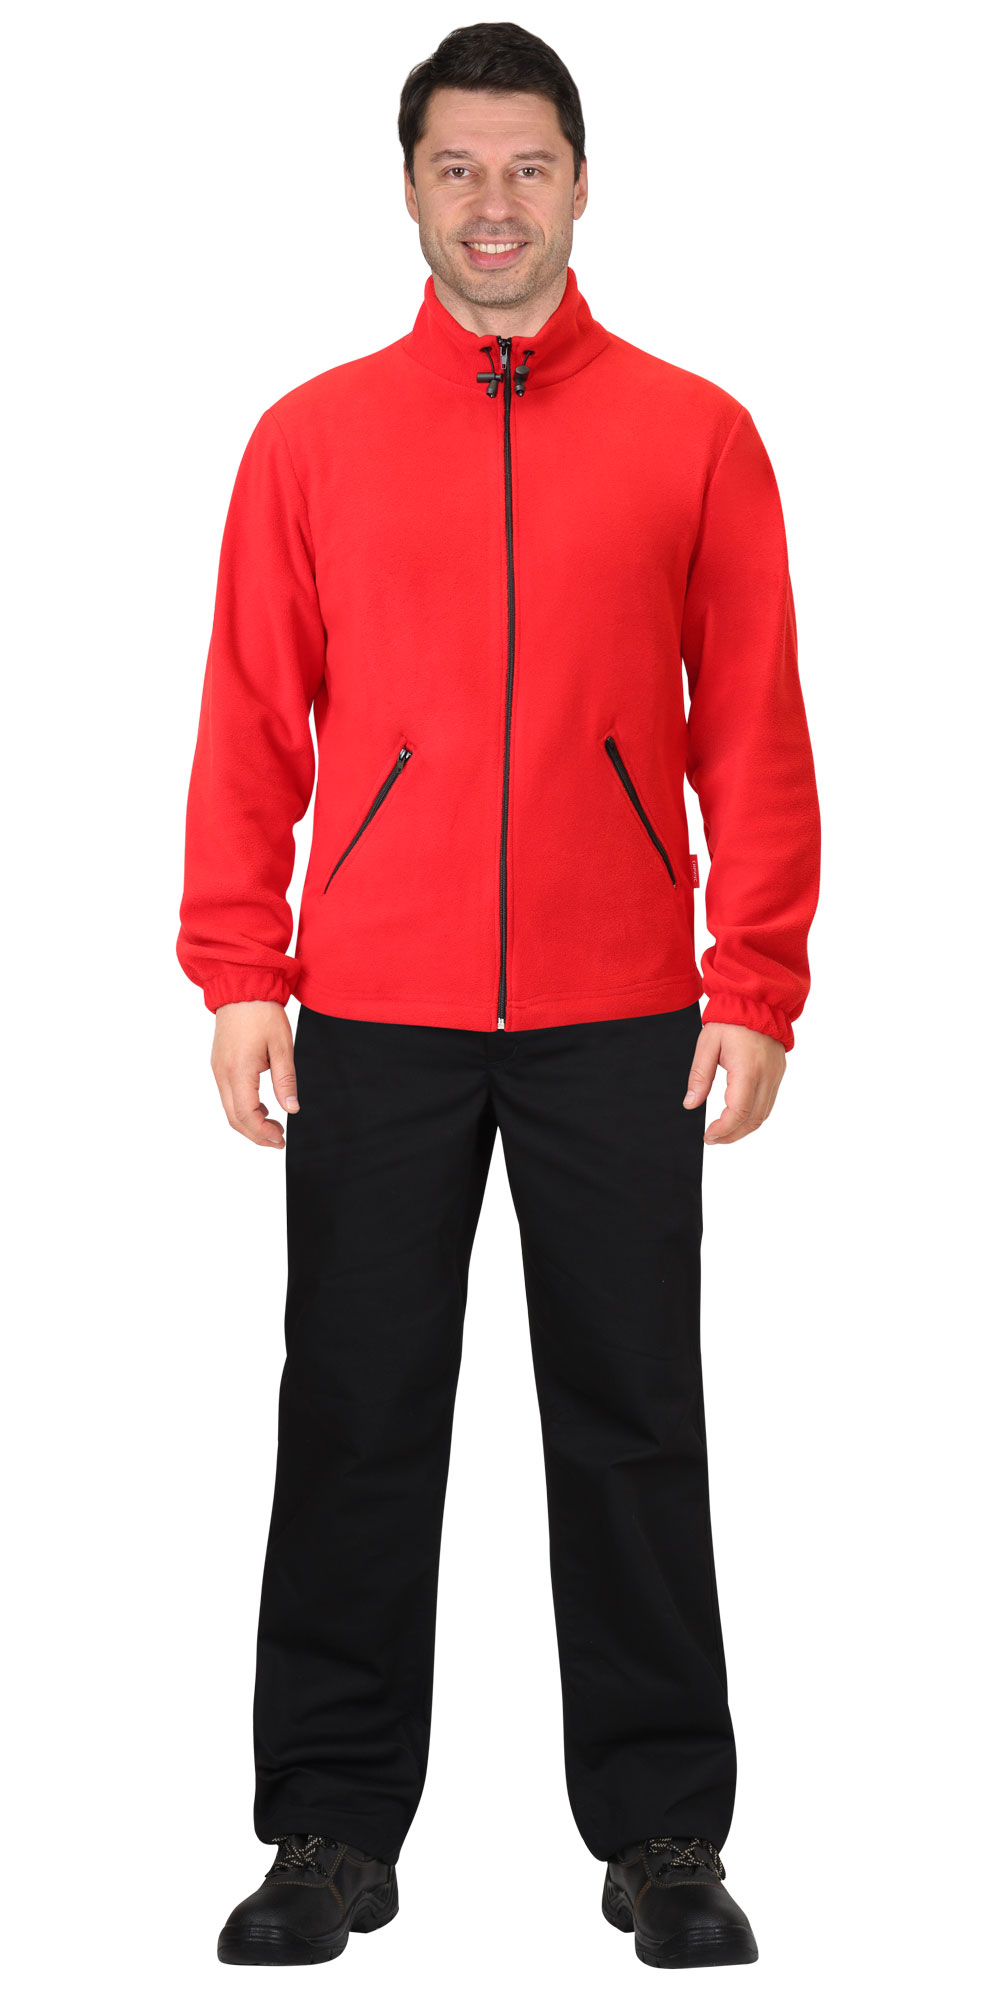 Флисовая куртка 280 г/кв.м, мужская, цвет: красный, ткань: 100% ПЭ